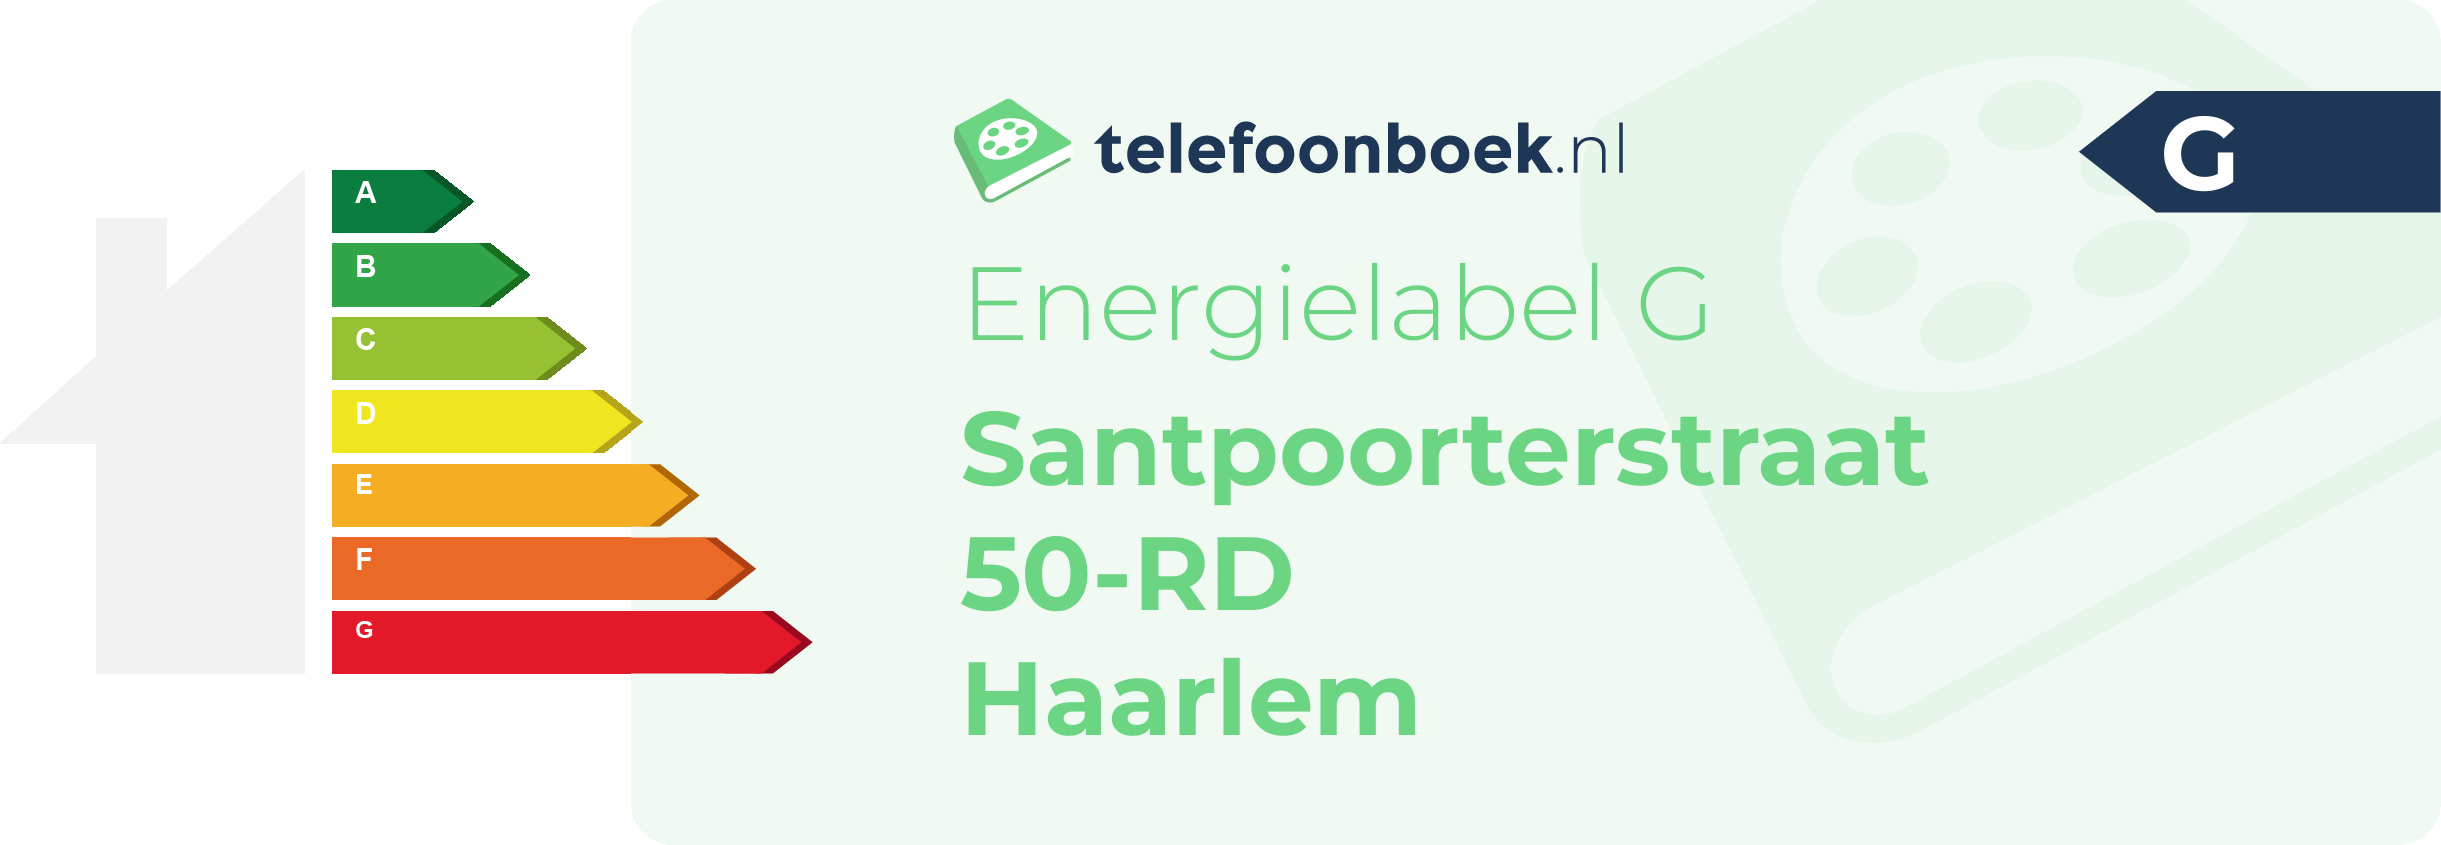 Energielabel Santpoorterstraat 50-RD Haarlem